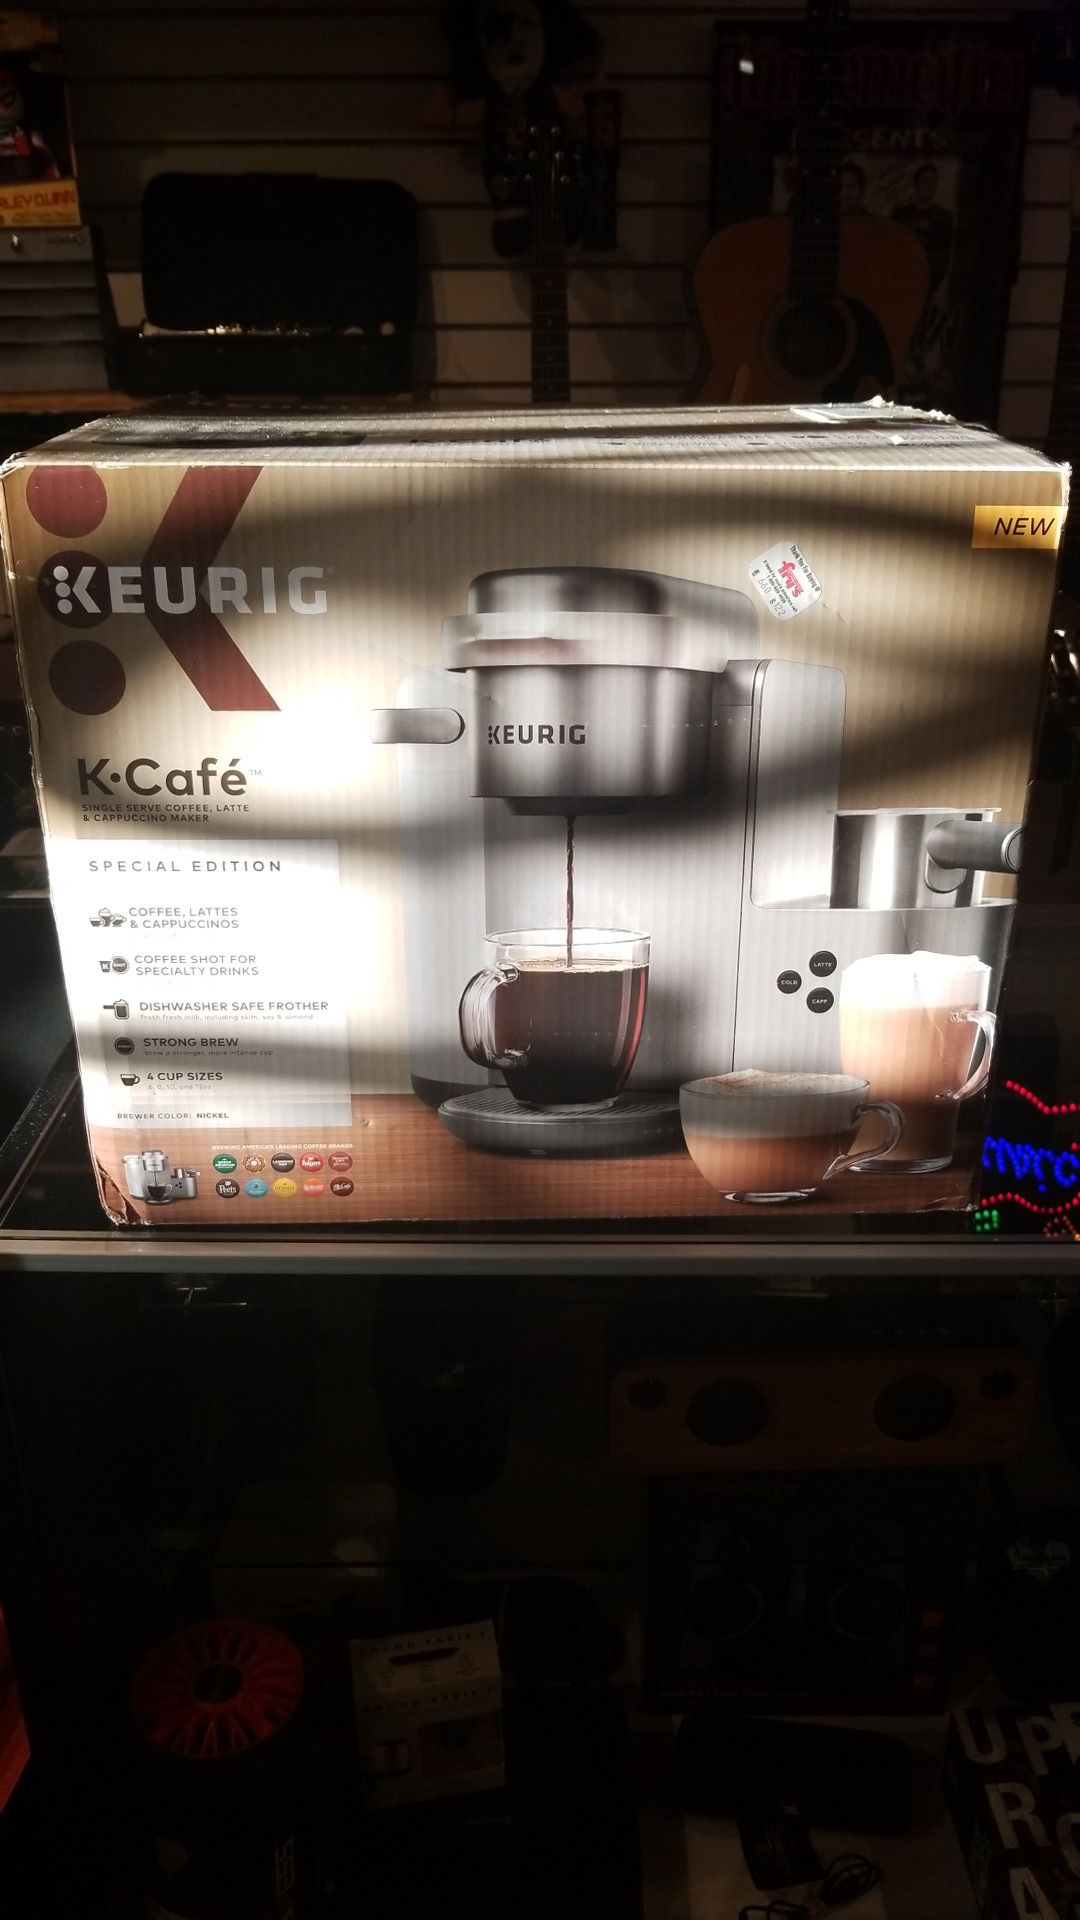 Keurig K-Cafe Cappucino maker